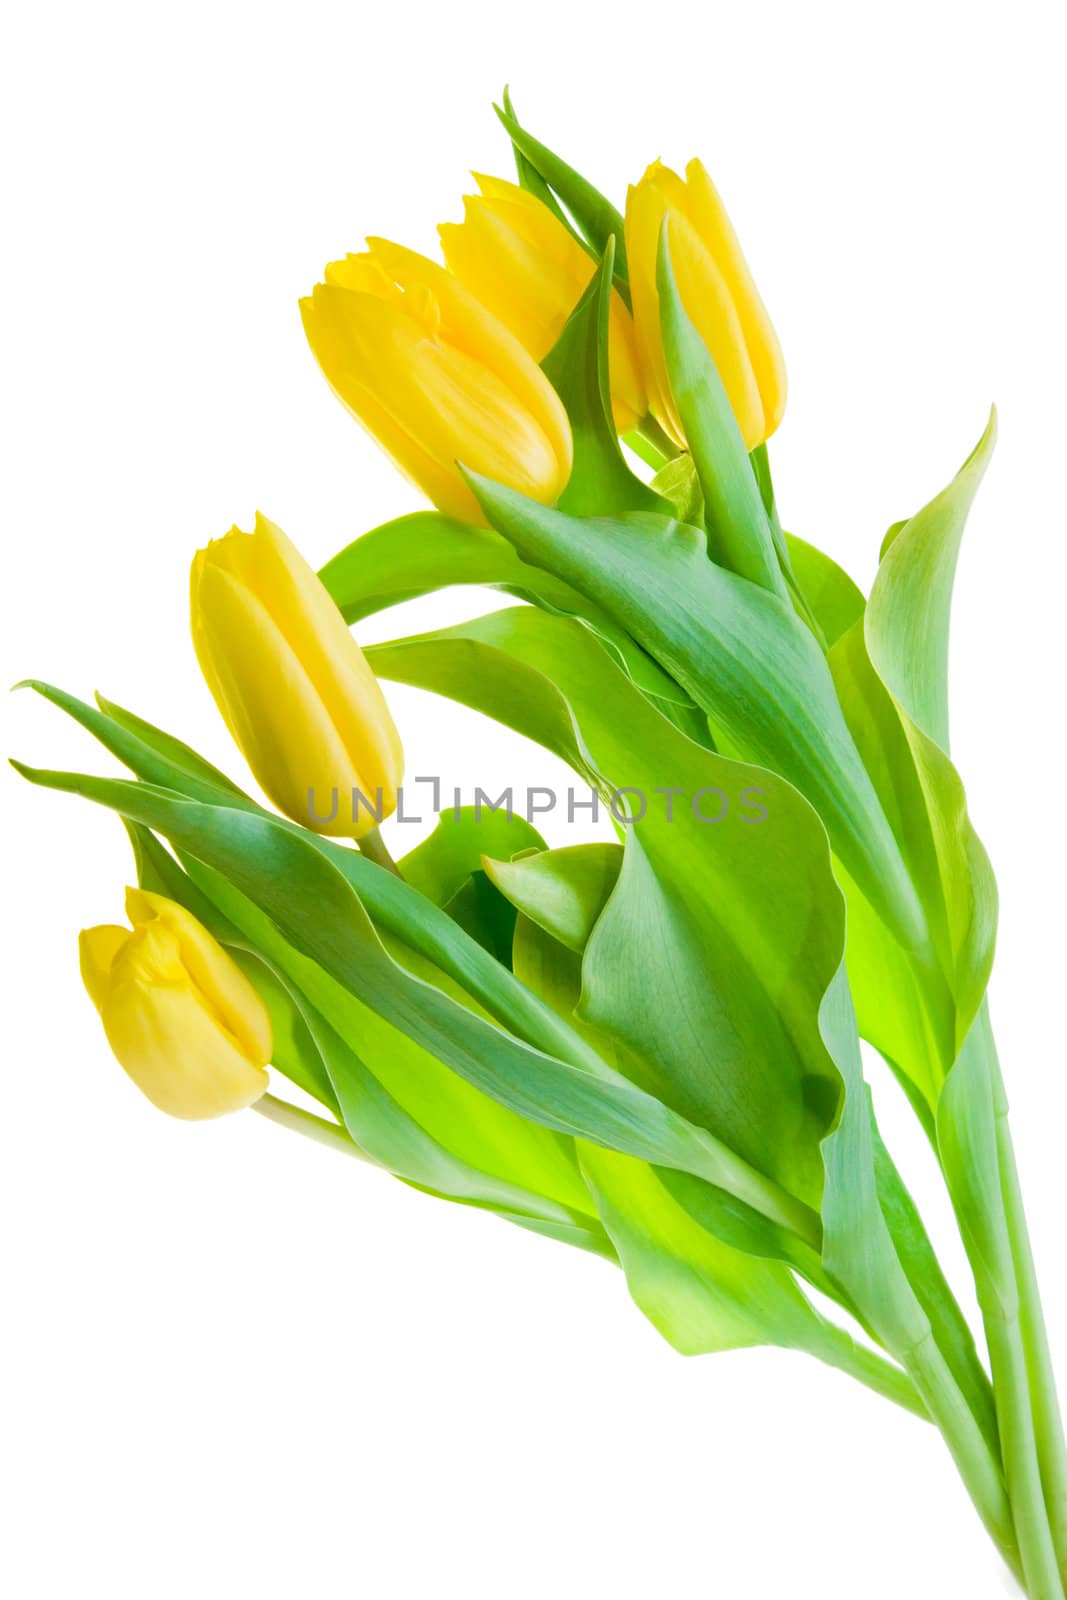 Yellow Tulips by Sergius